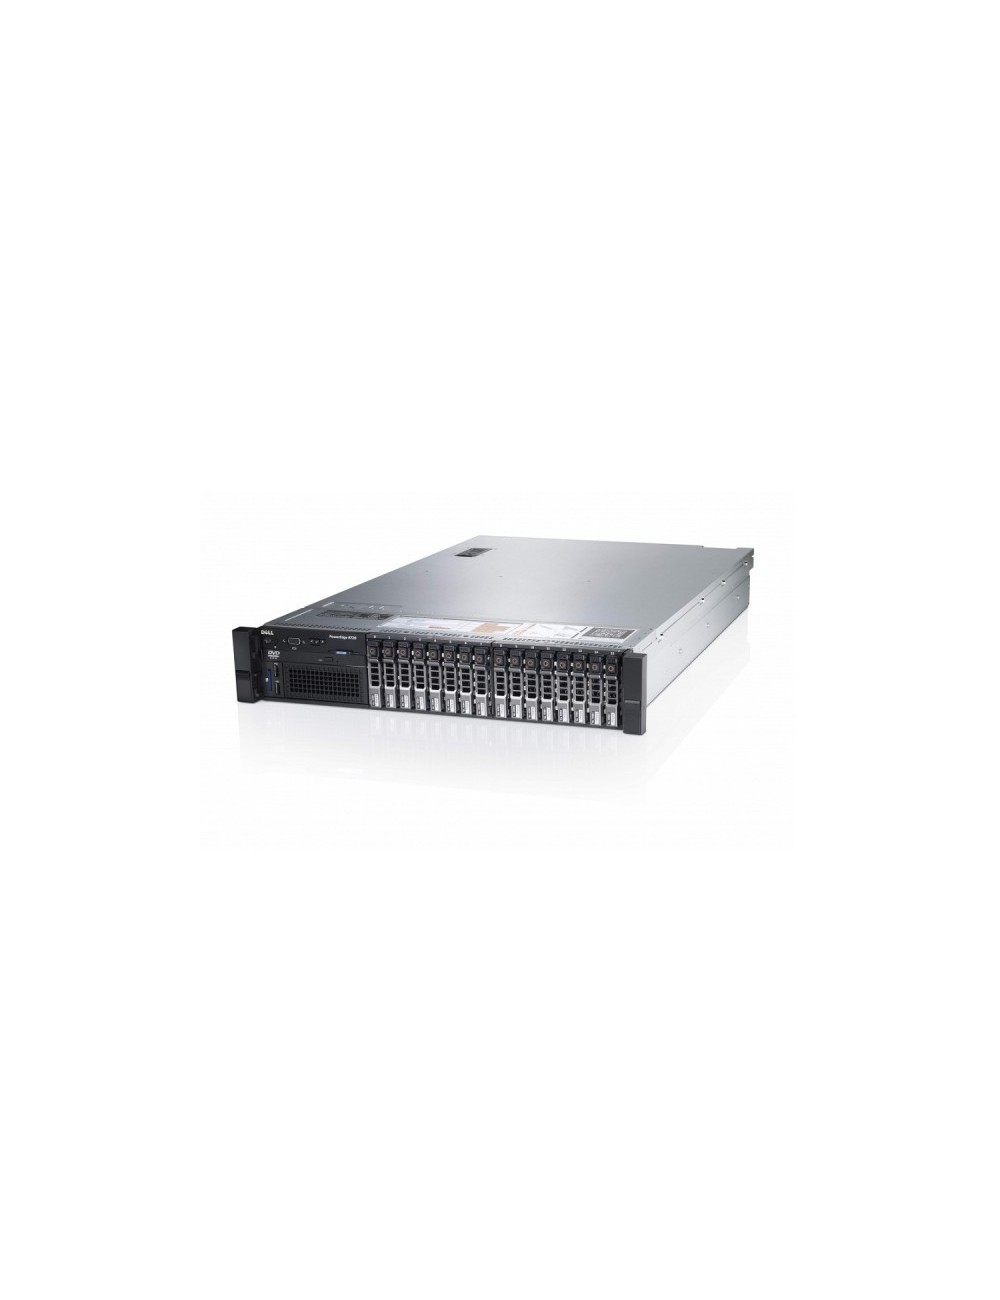 Dell PowerEdge R720 16x SFF, 2x E5-2640 6C, 32GB RAM, 6x 600GB 15k 12G SAS HDD, H710P 1GB, 2x PSU, Rail Kit